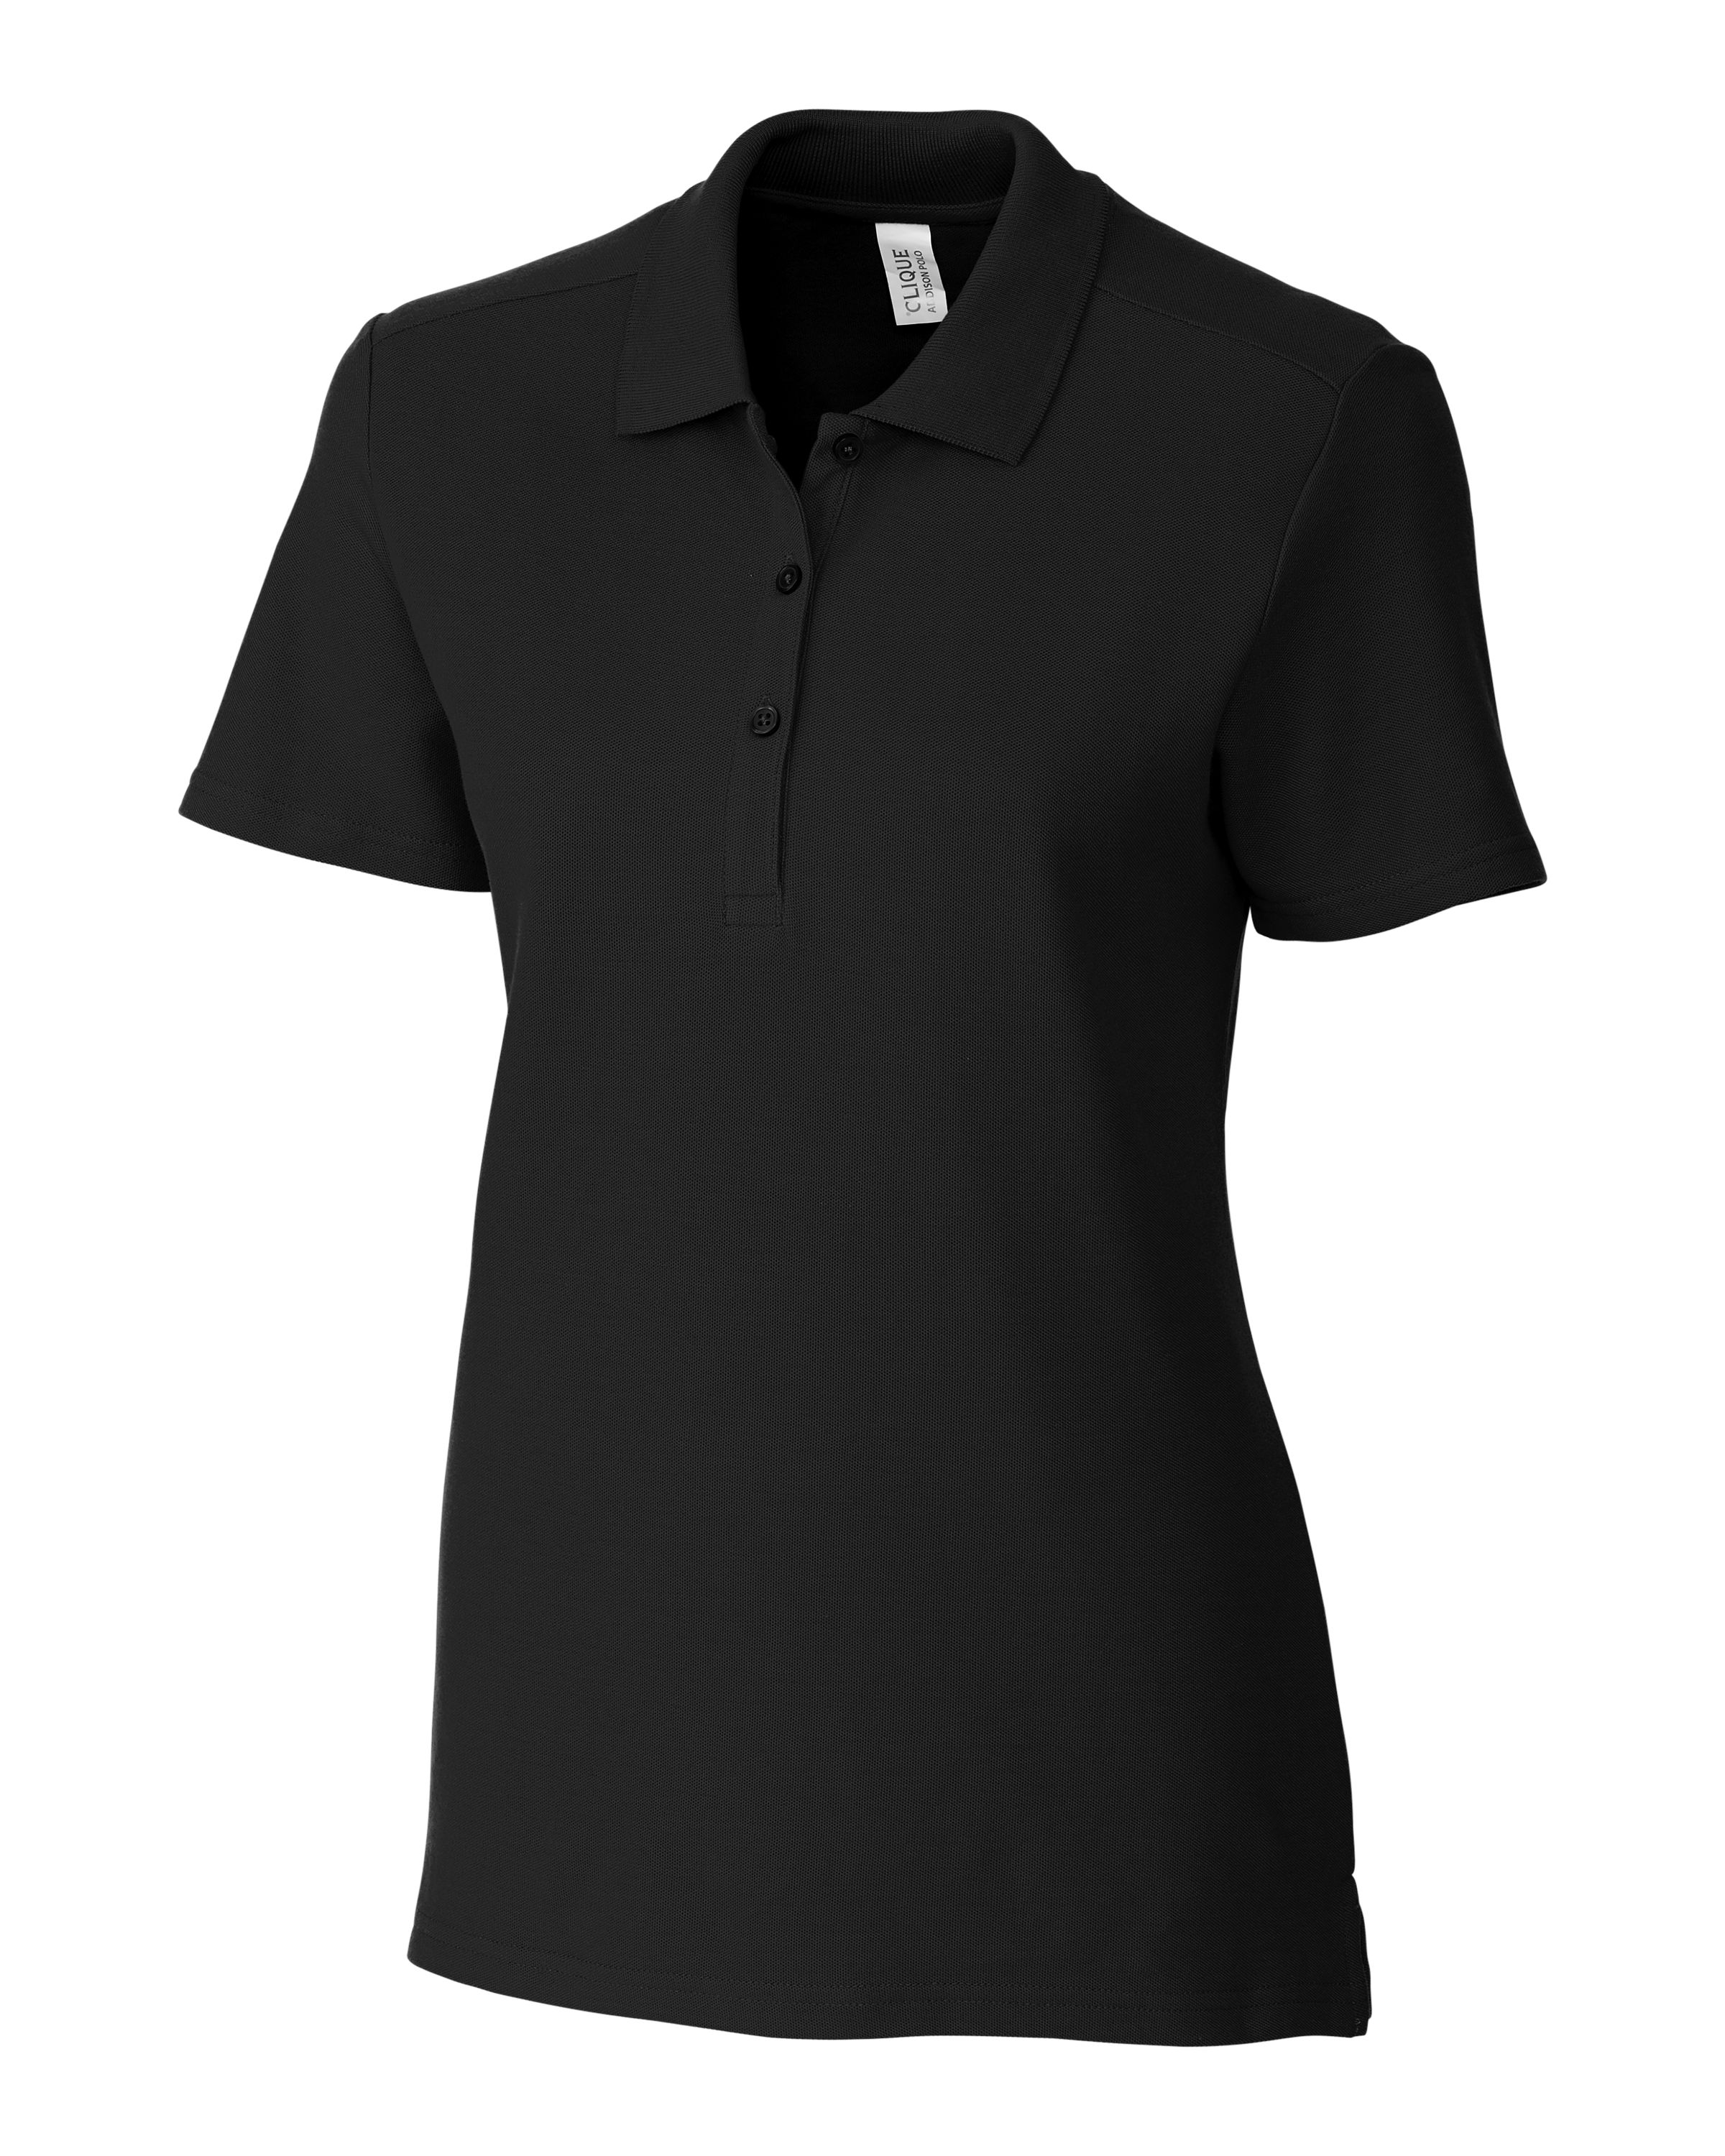 Clique Addison All Cotton Pique Short Sleeve Womens Polo-